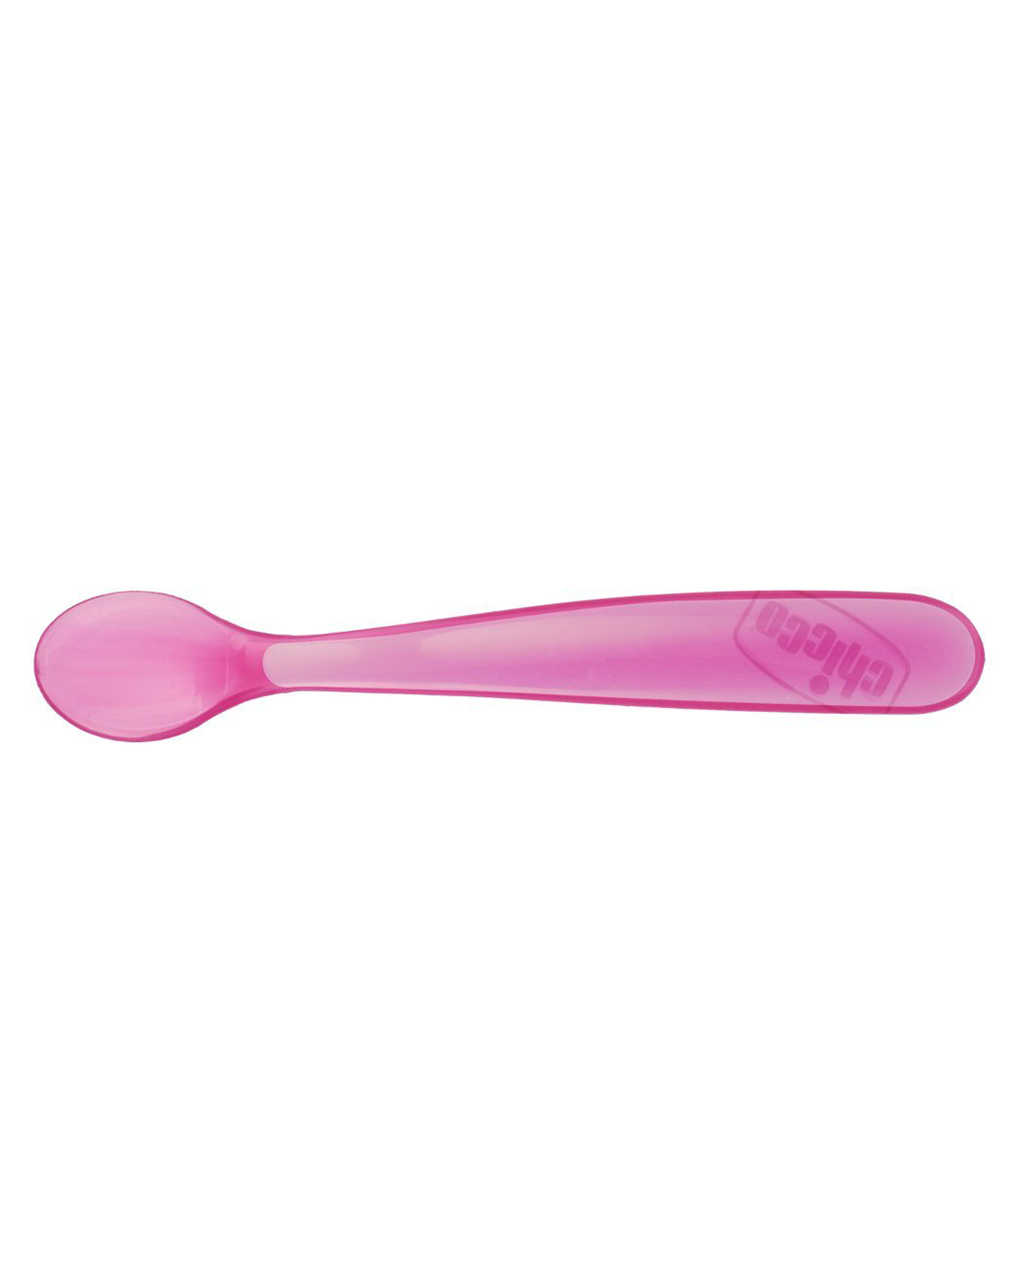 Cucchiaio morbido silicone 6m+ rosa (2pz) - Chicco